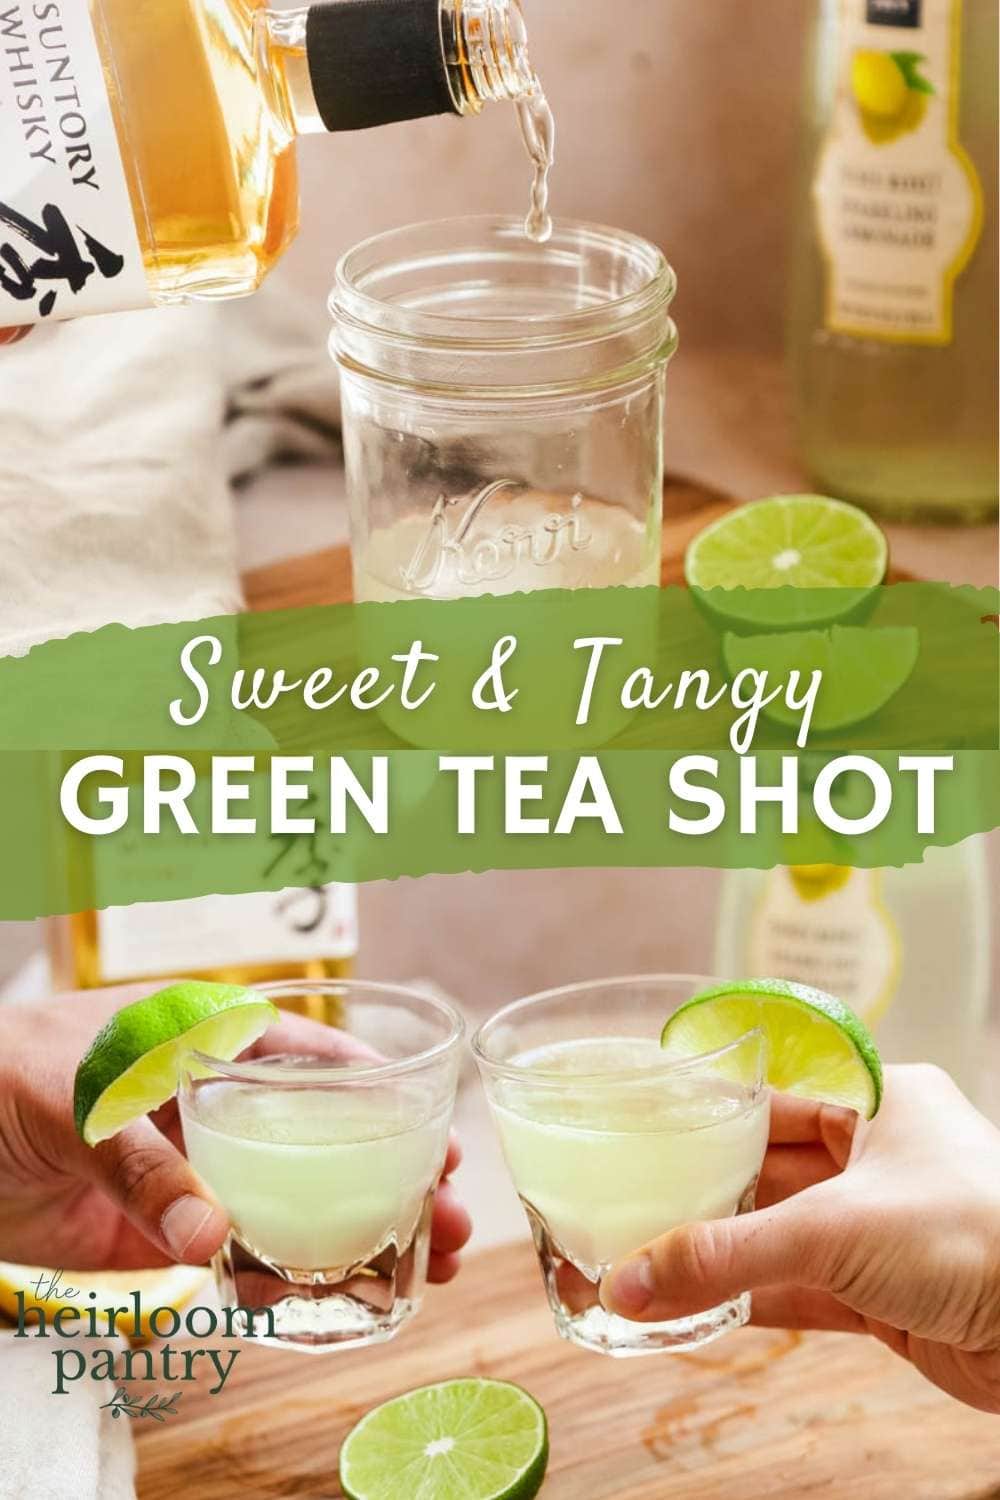 How to make a green tea shot Pinterest pin.